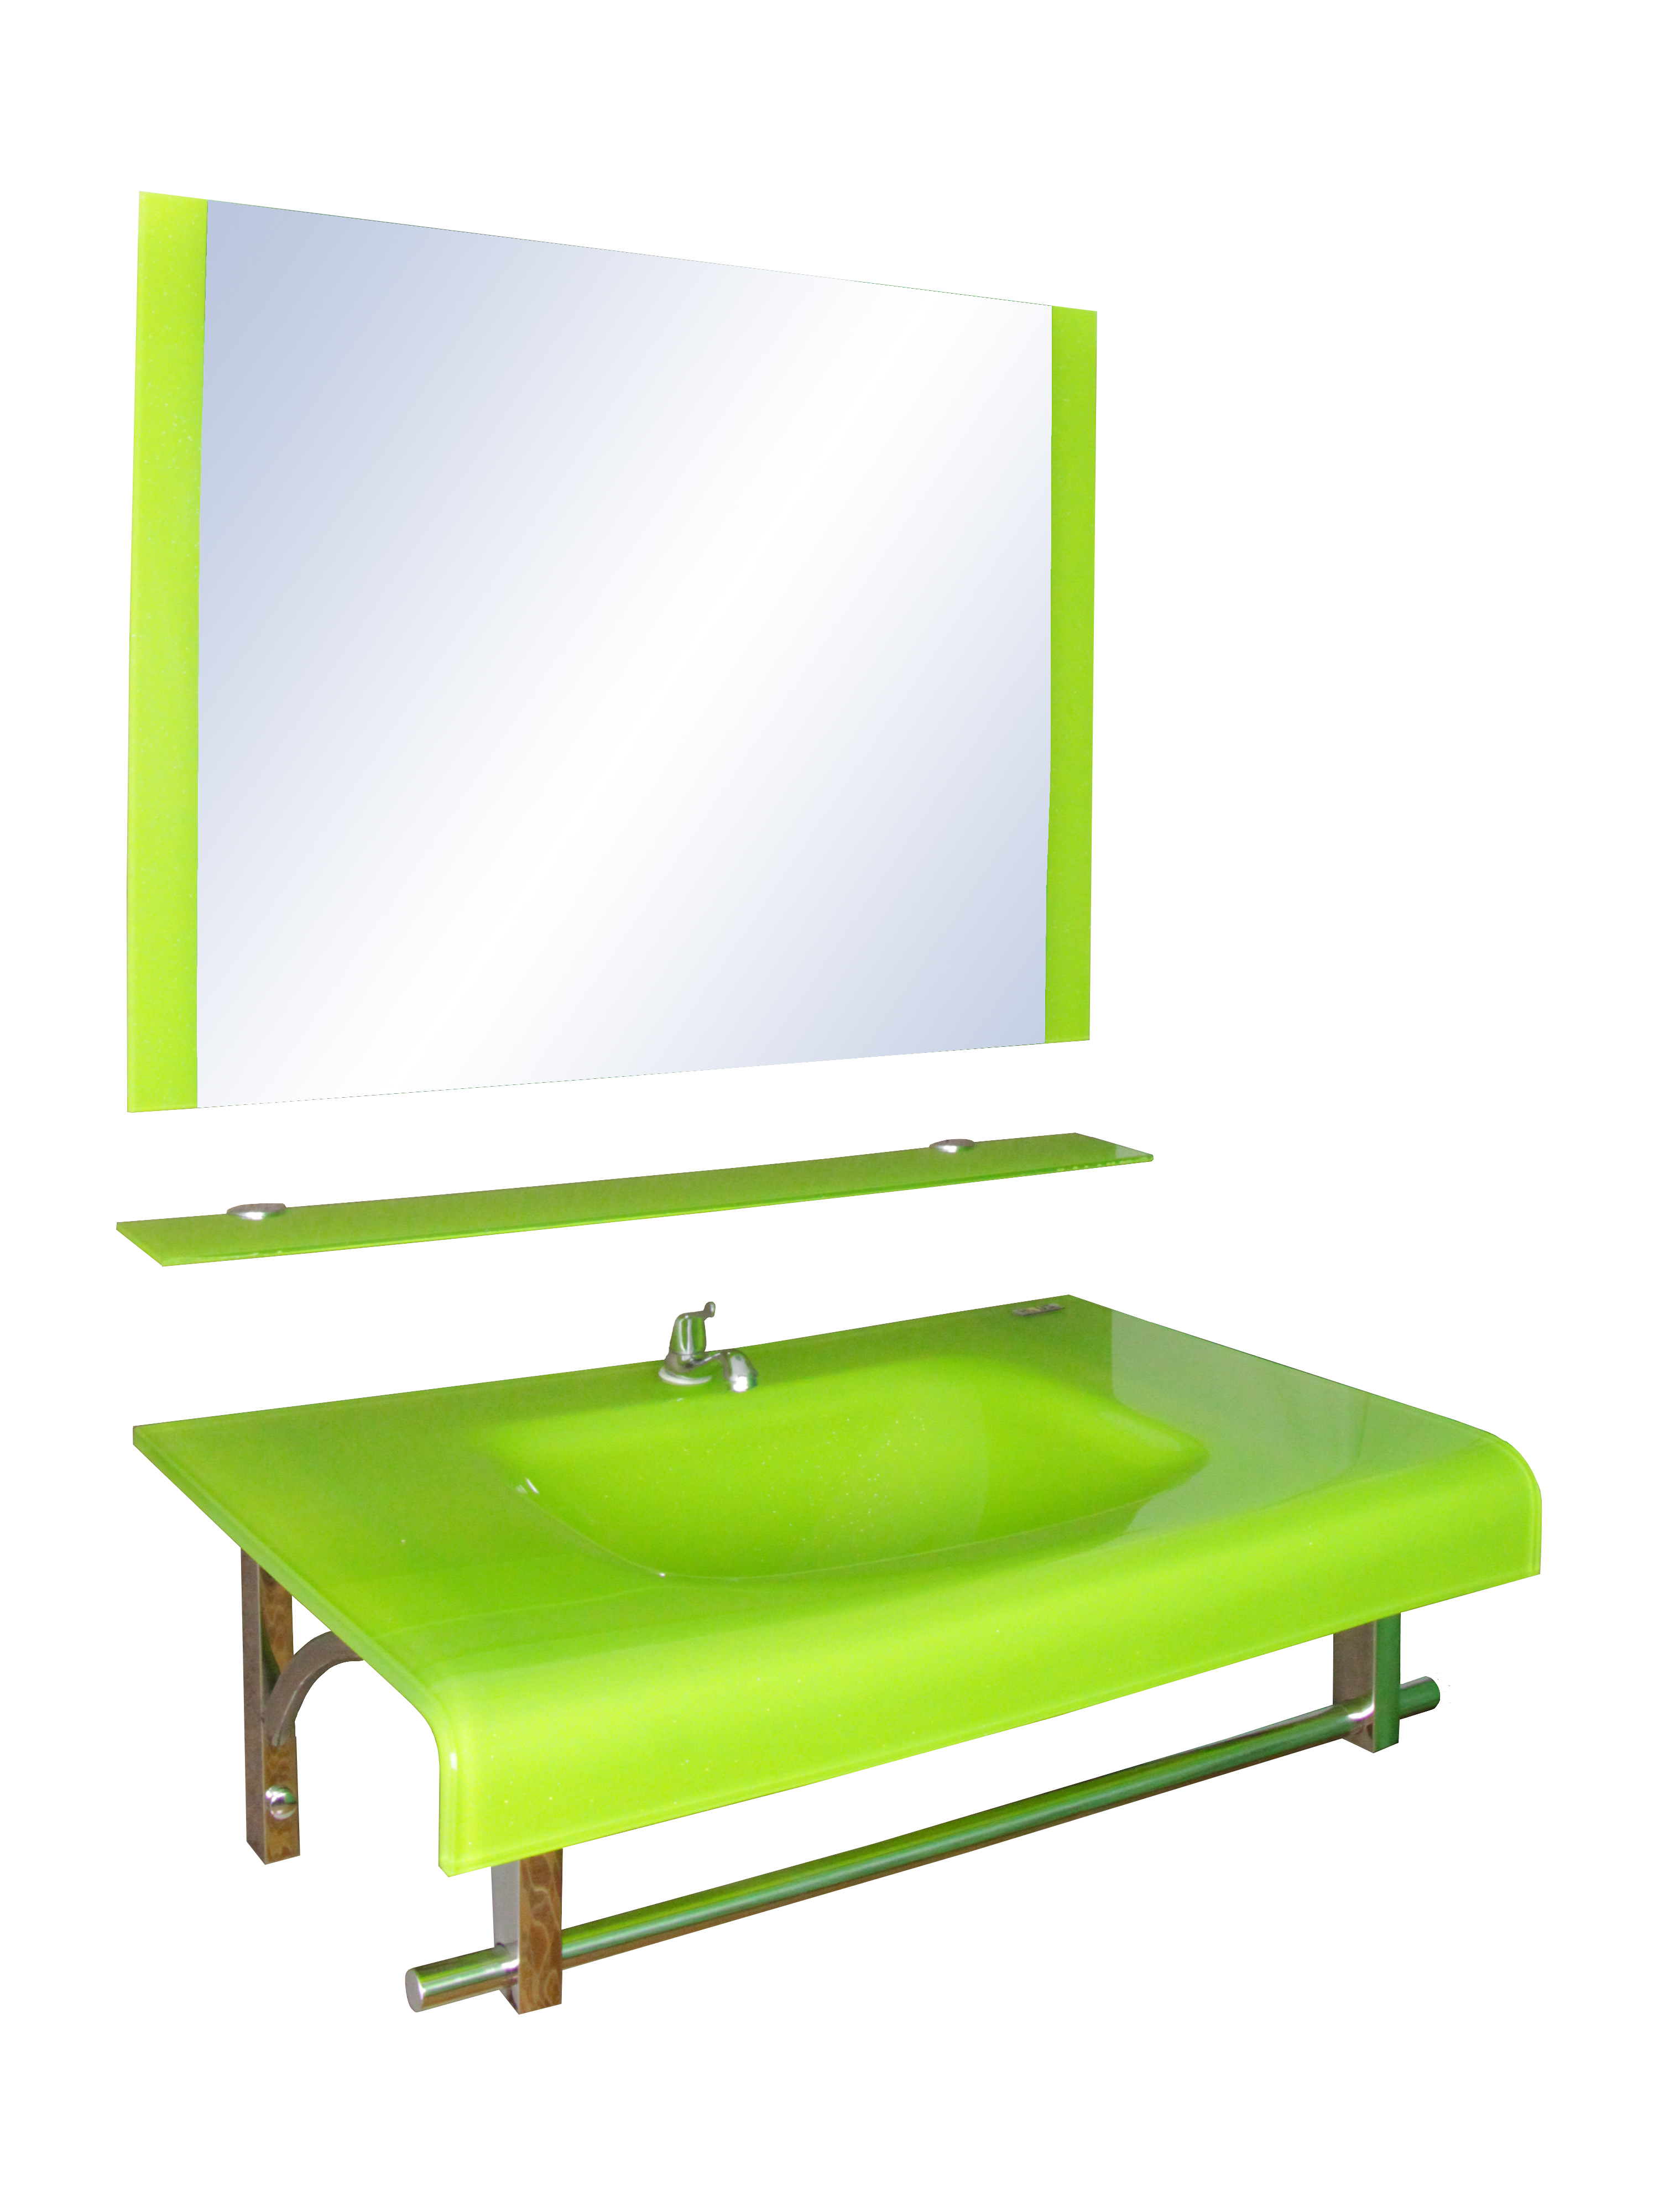 ชุดเคาน์เตอร์แก้ว หนา 15 mm (มาตรฐาน) สีเขียว พร้อมกระจก